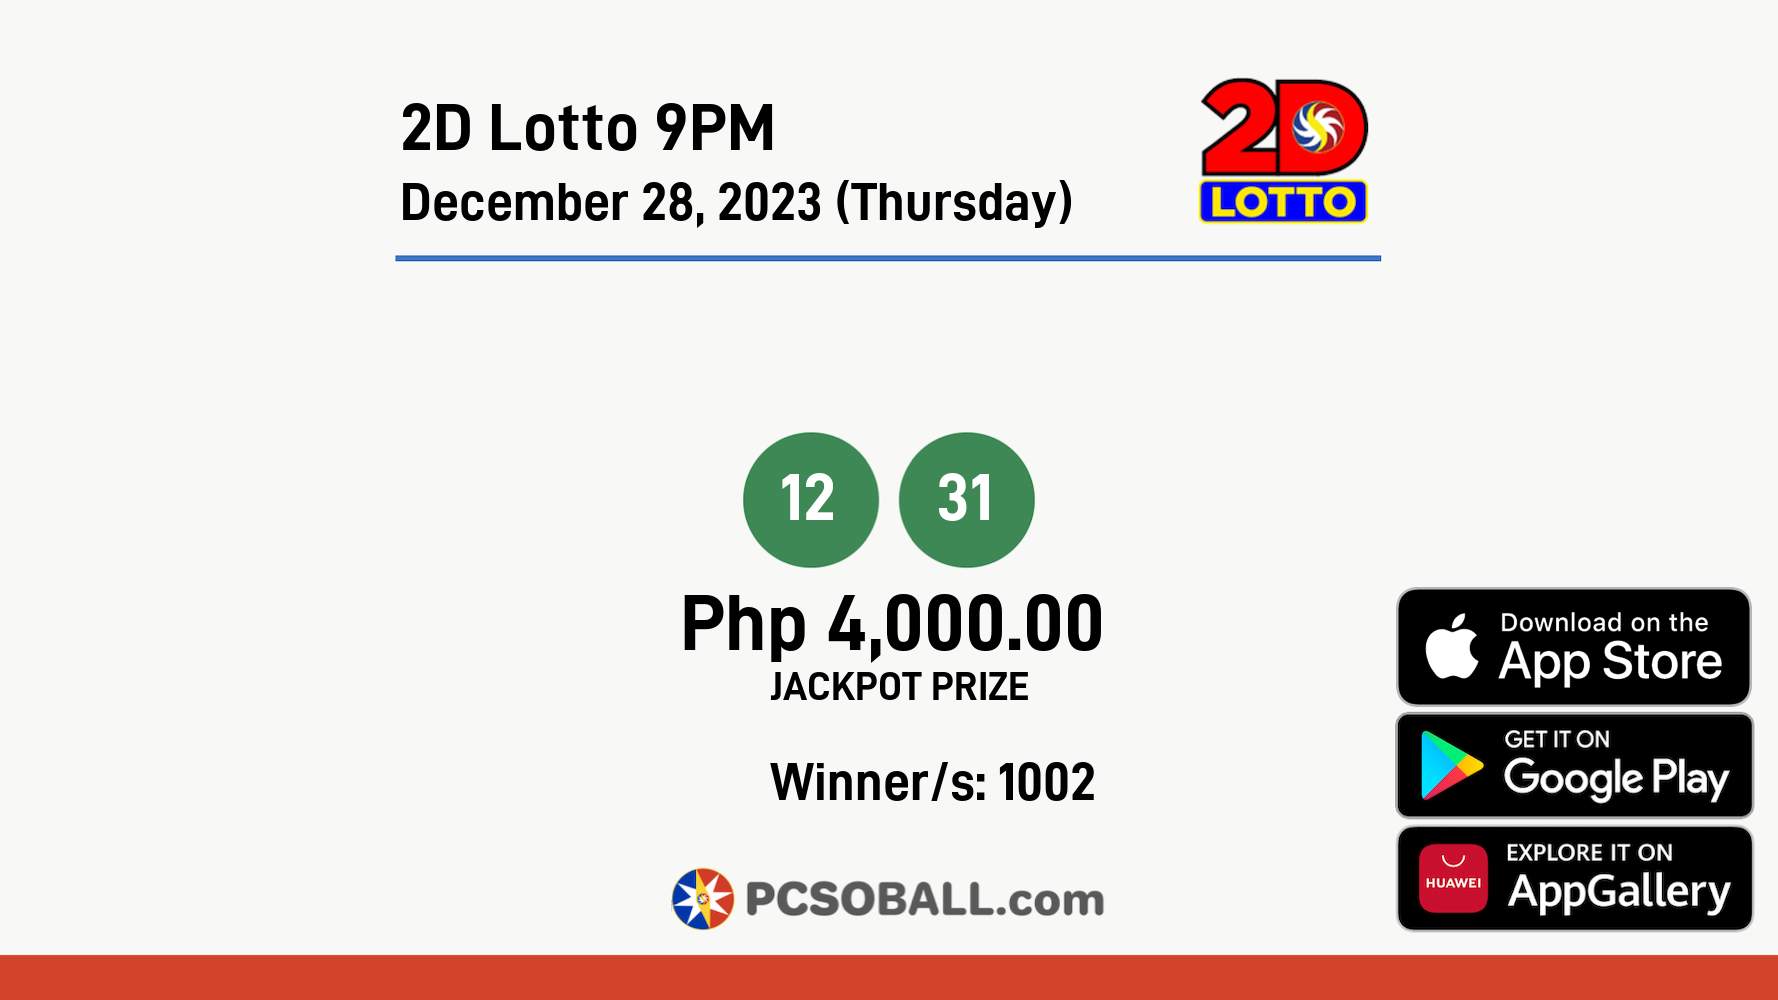 2D Lotto 9PM December 28, 2023 (Thursday) Result